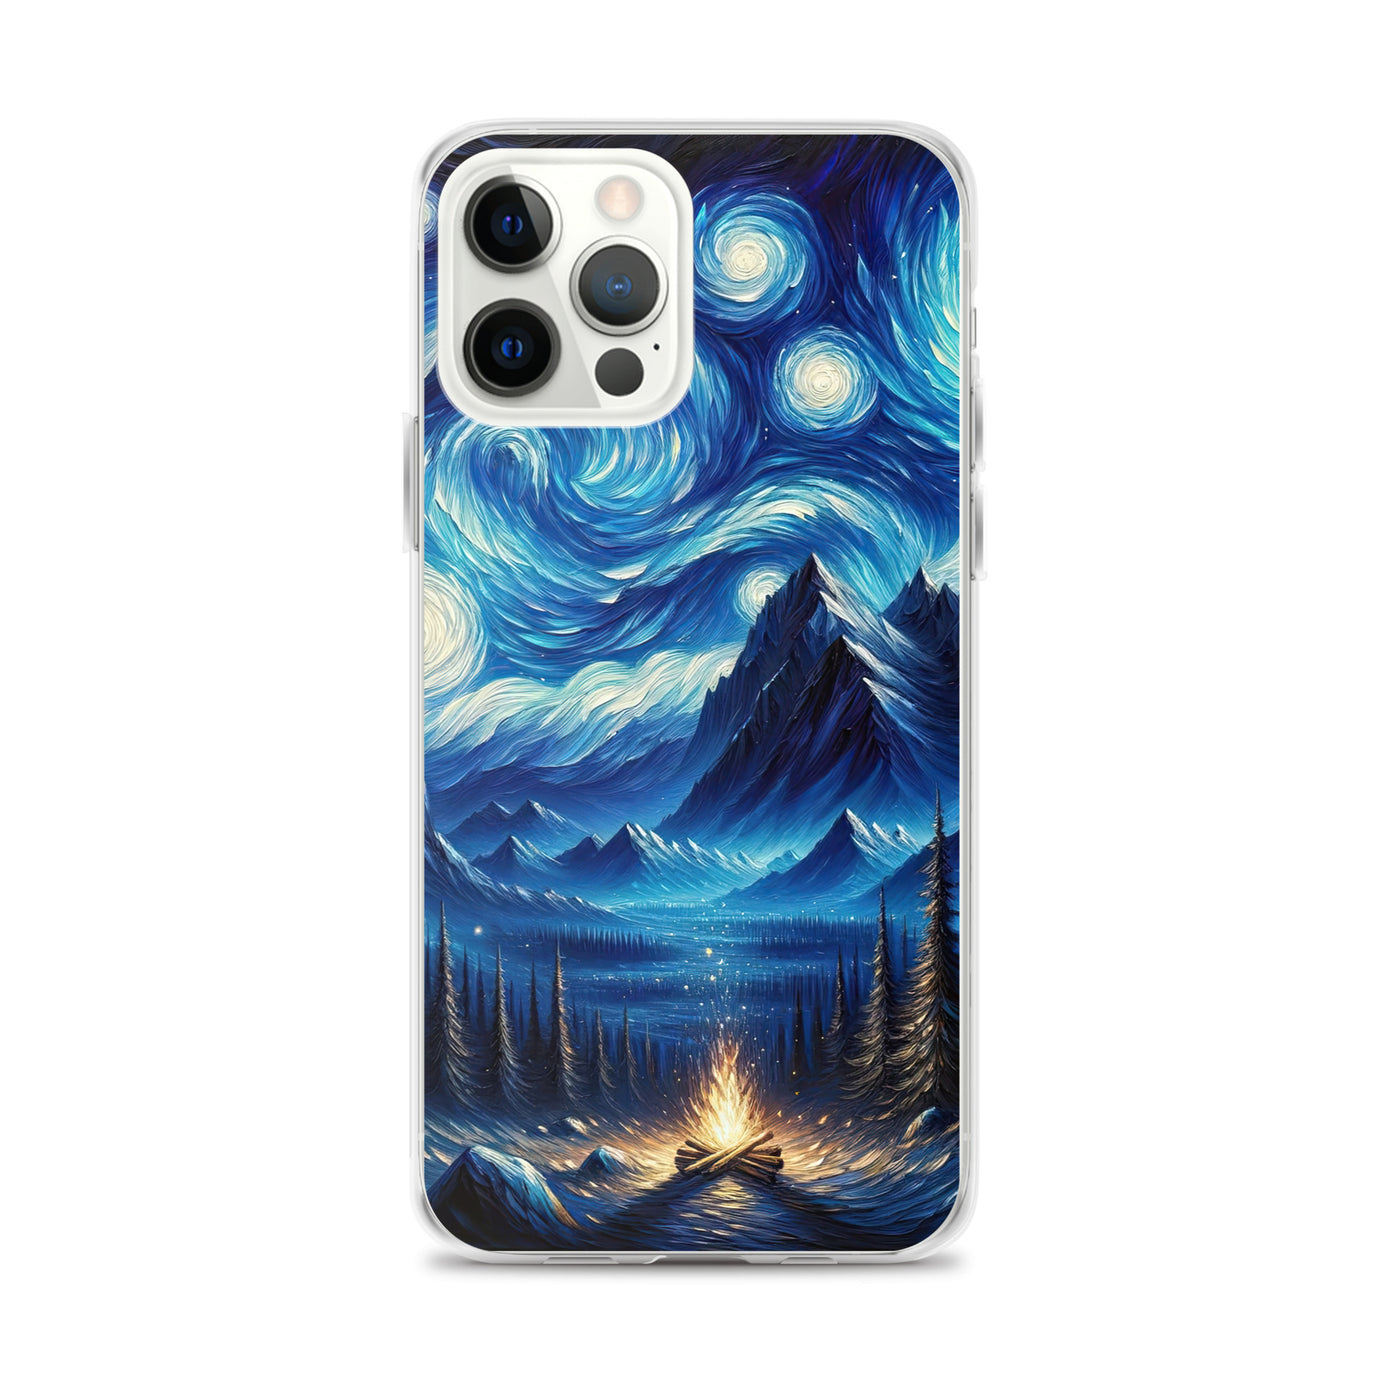 Sternennacht-Stil Ölgemälde der Alpen, himmlische Wirbelmuster - iPhone Schutzhülle (durchsichtig) berge xxx yyy zzz iPhone 12 Pro Max